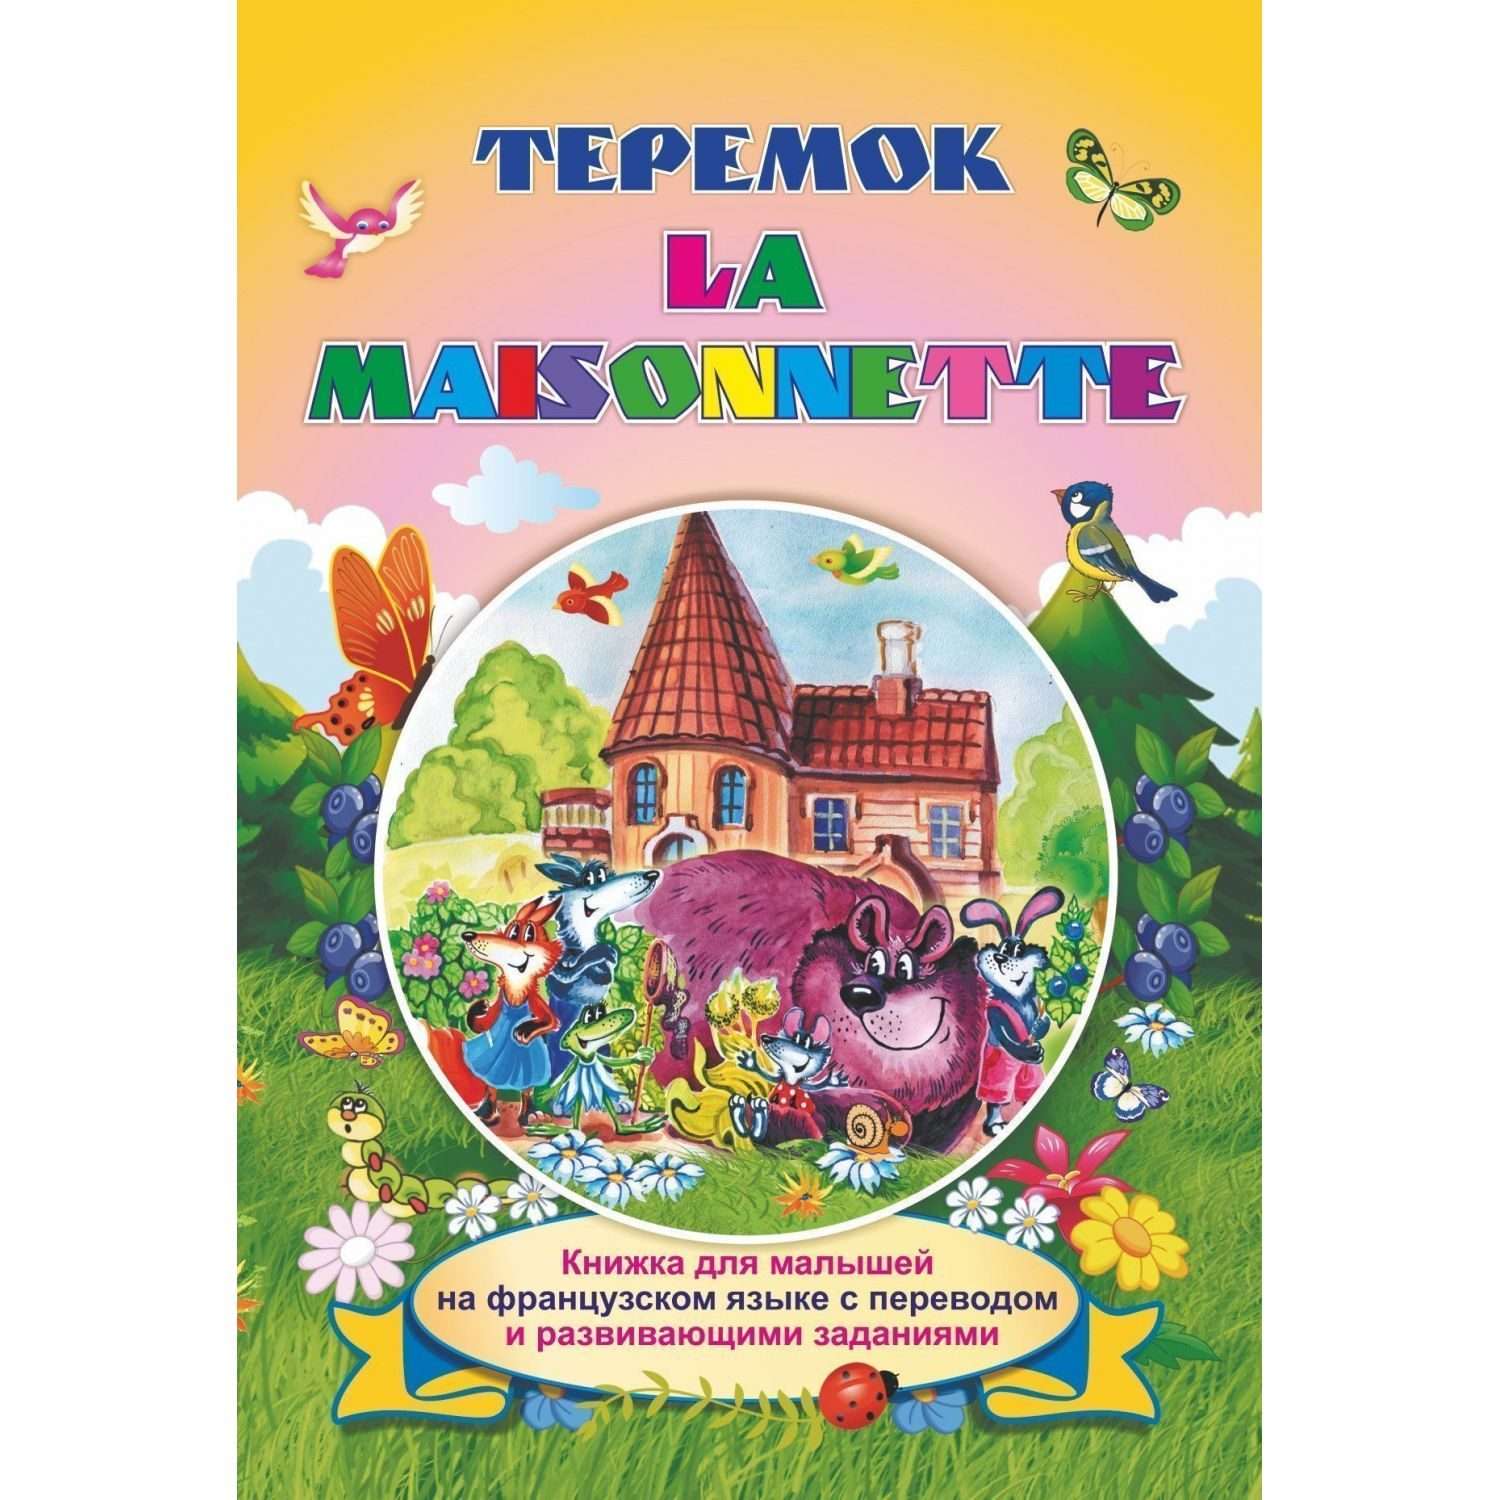 Книга Учитель Теремок на французском языке с переводом и заданиями - фото 1